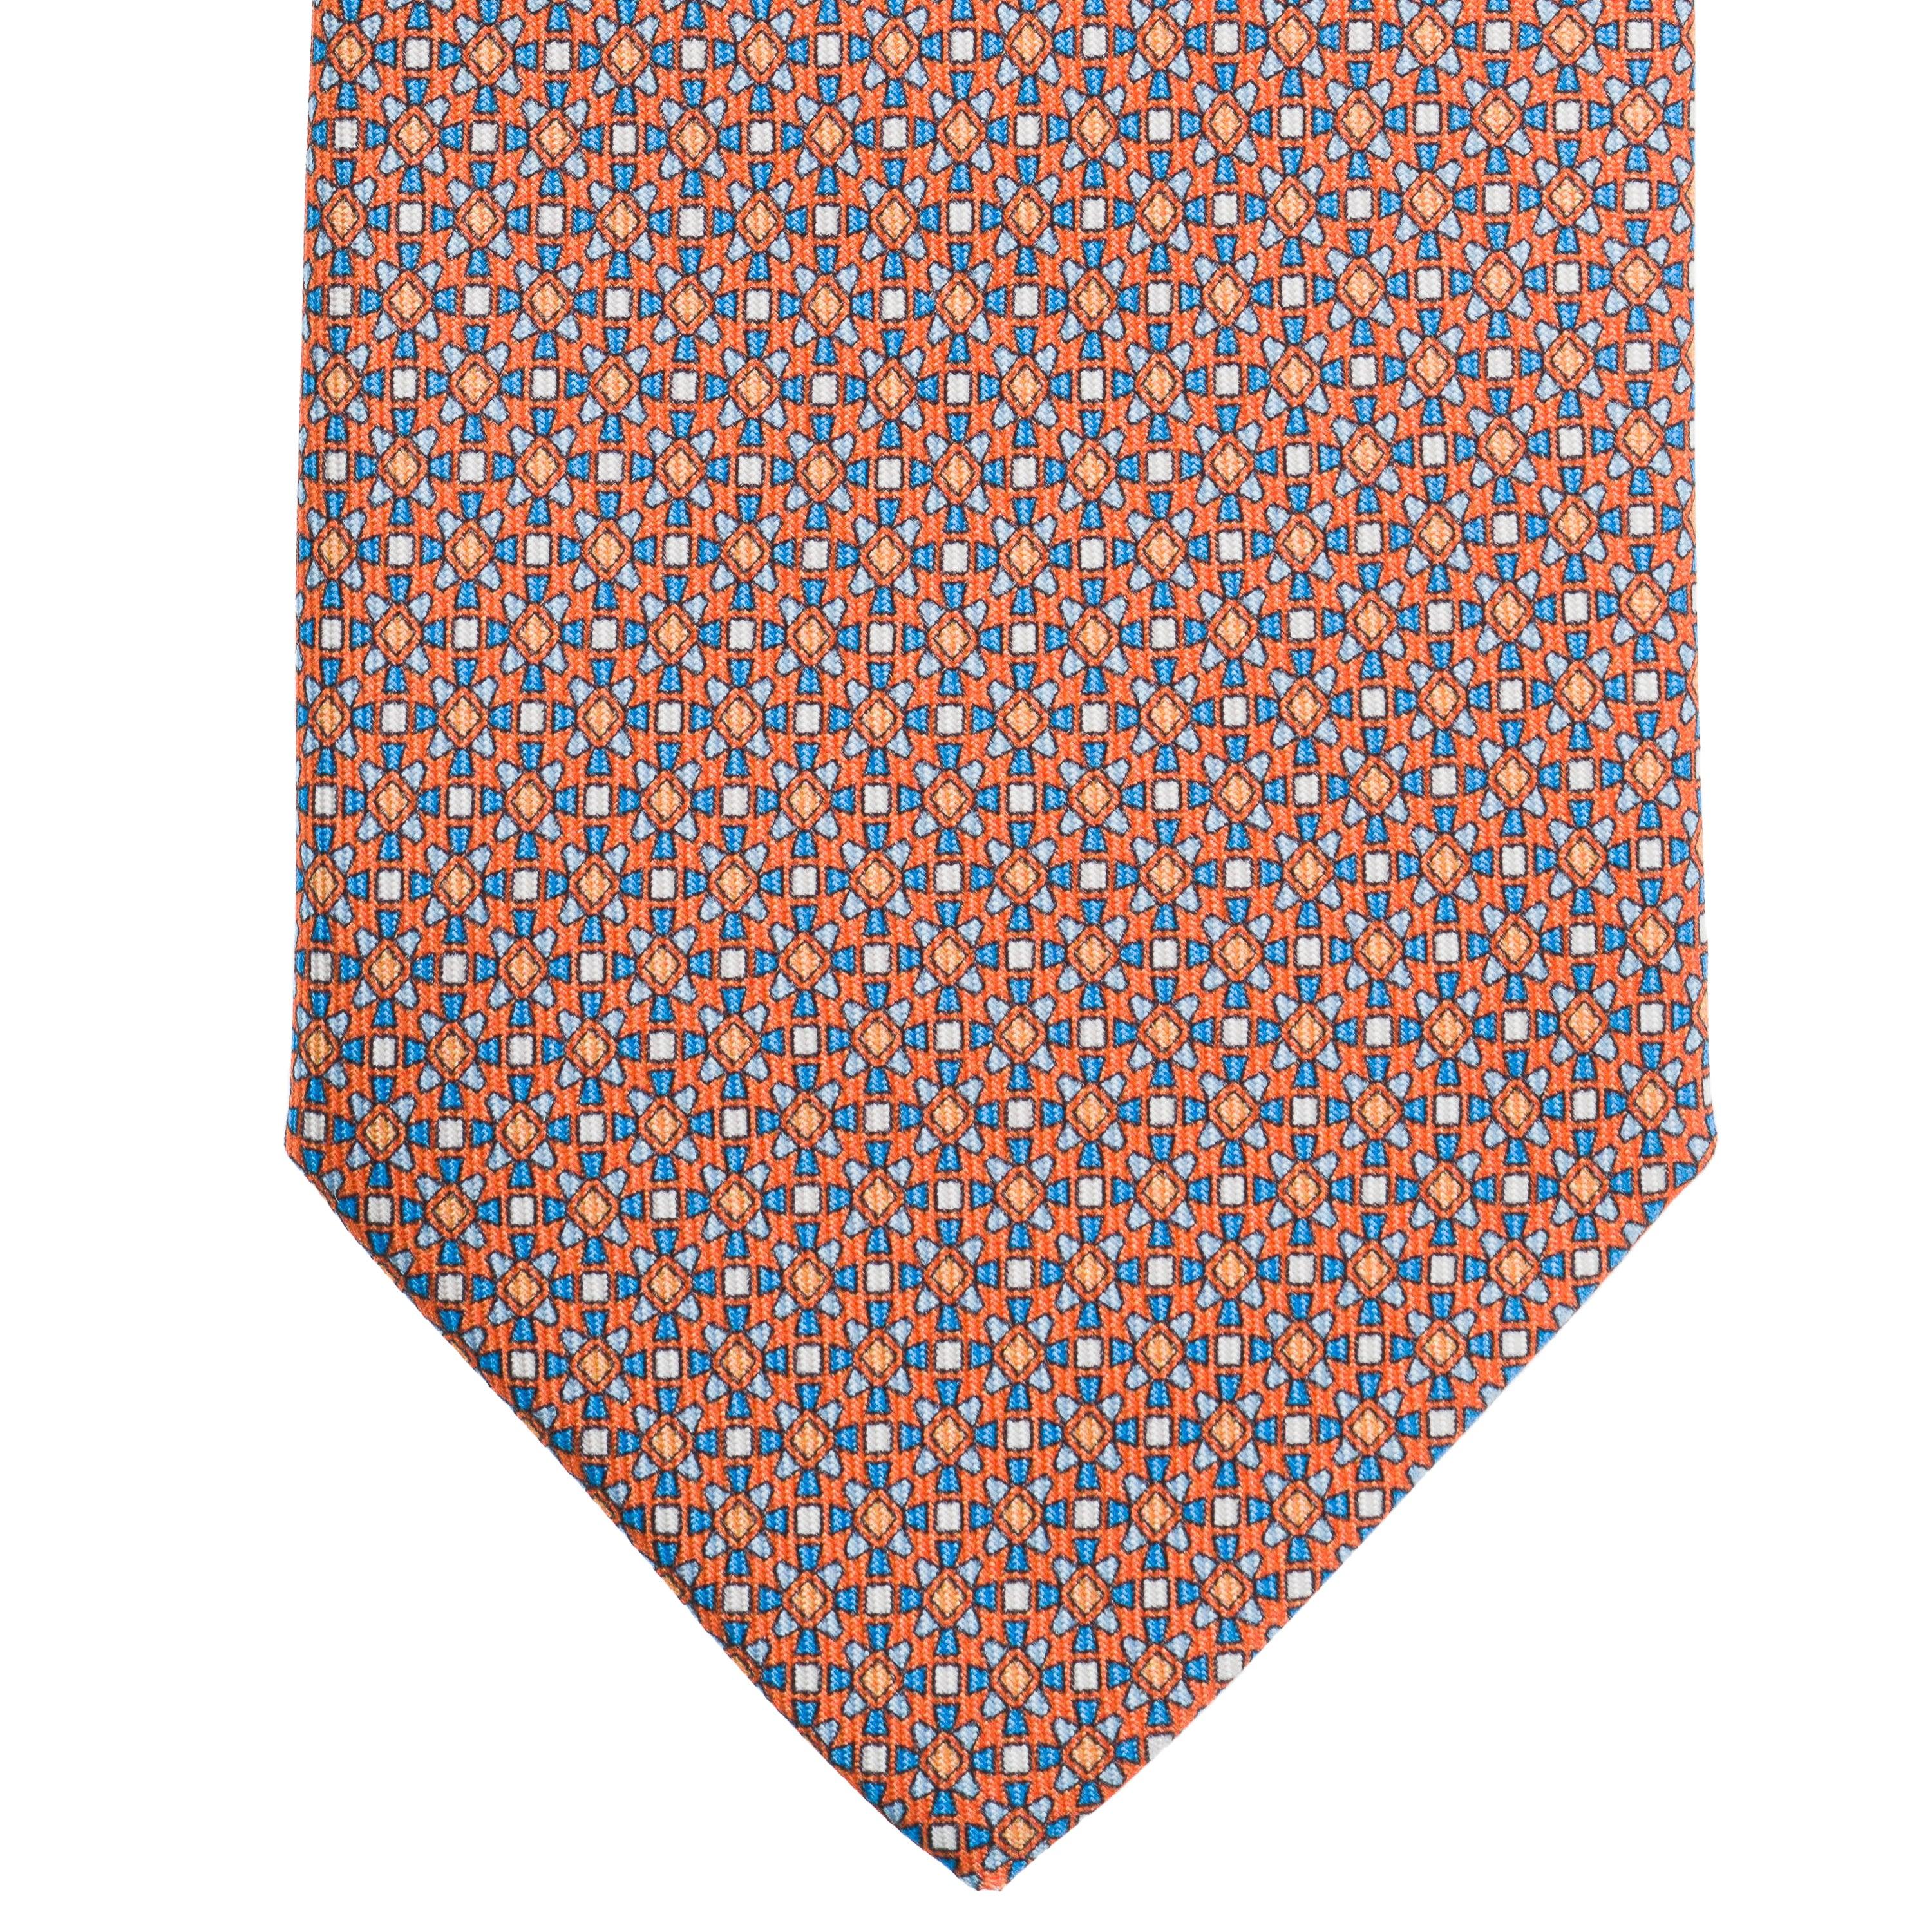 Cravatta 3 pieghe - TAL P1 - Talarico Cravatte